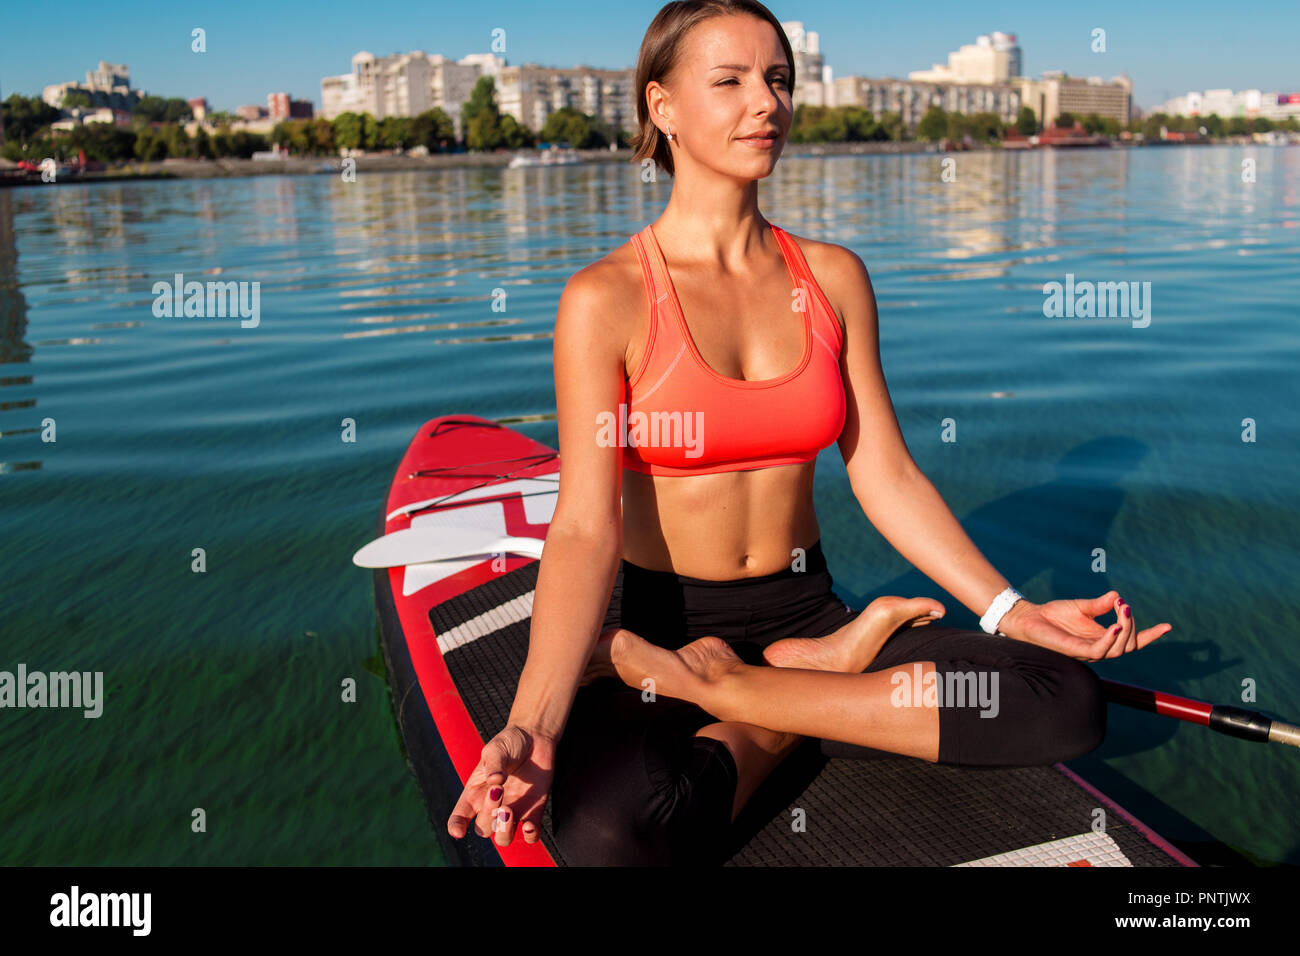 Stand Up Paddle board yoga effectué par belle fille sur la ville, l'arrière-plan lumineux sur l'eau formation de yoga Banque D'Images